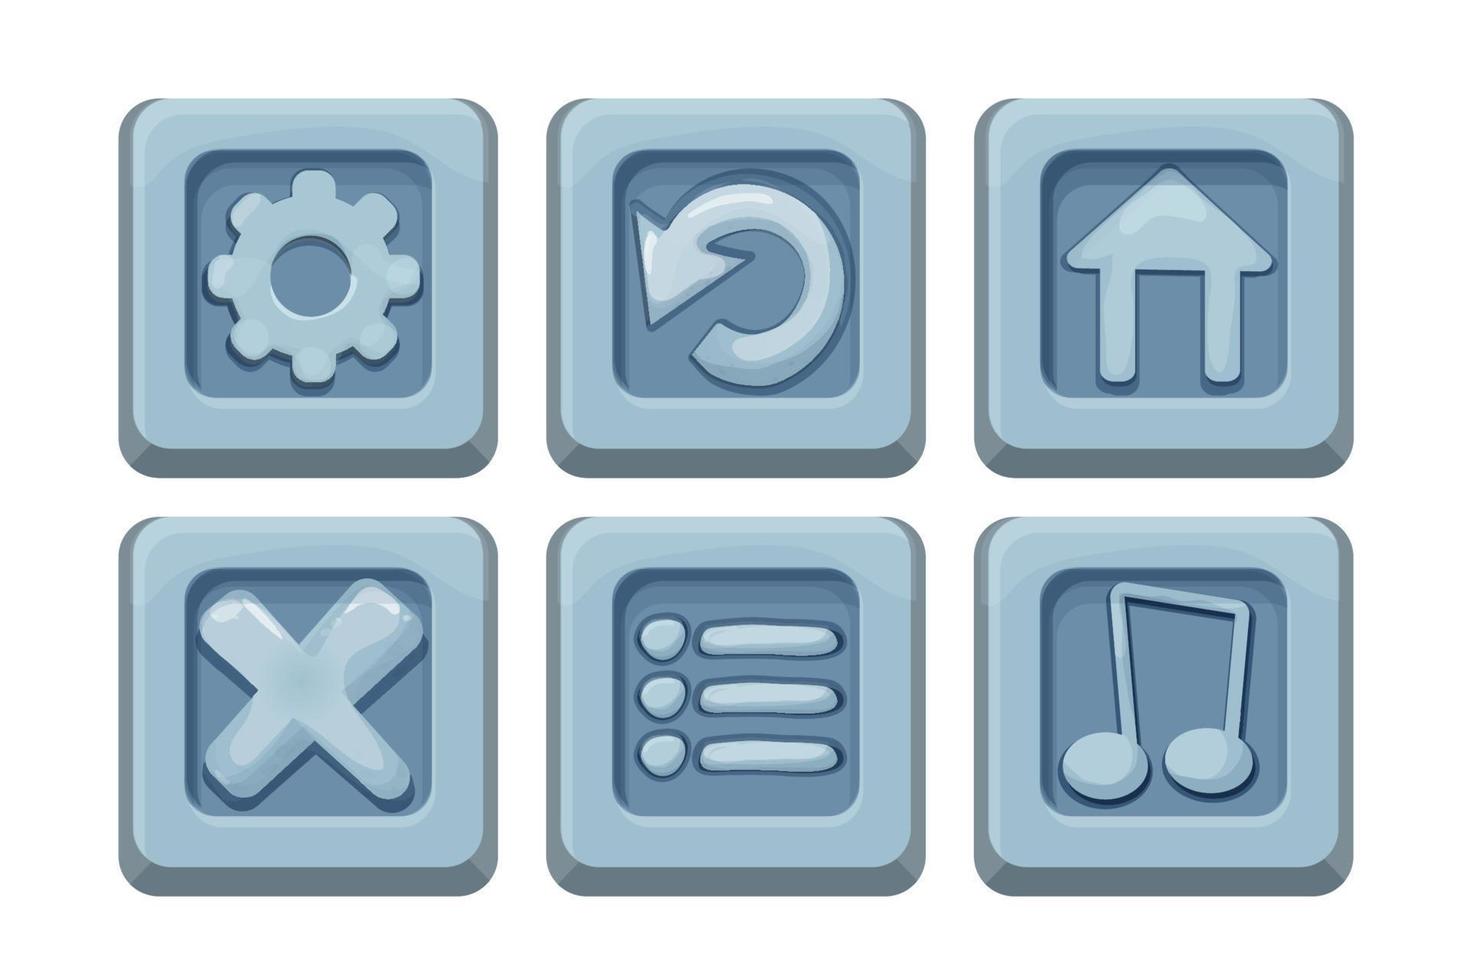 définir les boutons de l'interface utilisateur du menu sur un bloc de pierre dans un style de dessin animé comique, élément de conception de jeu, objet d'interface isolé sur fond blanc. illustration vectorielle vecteur